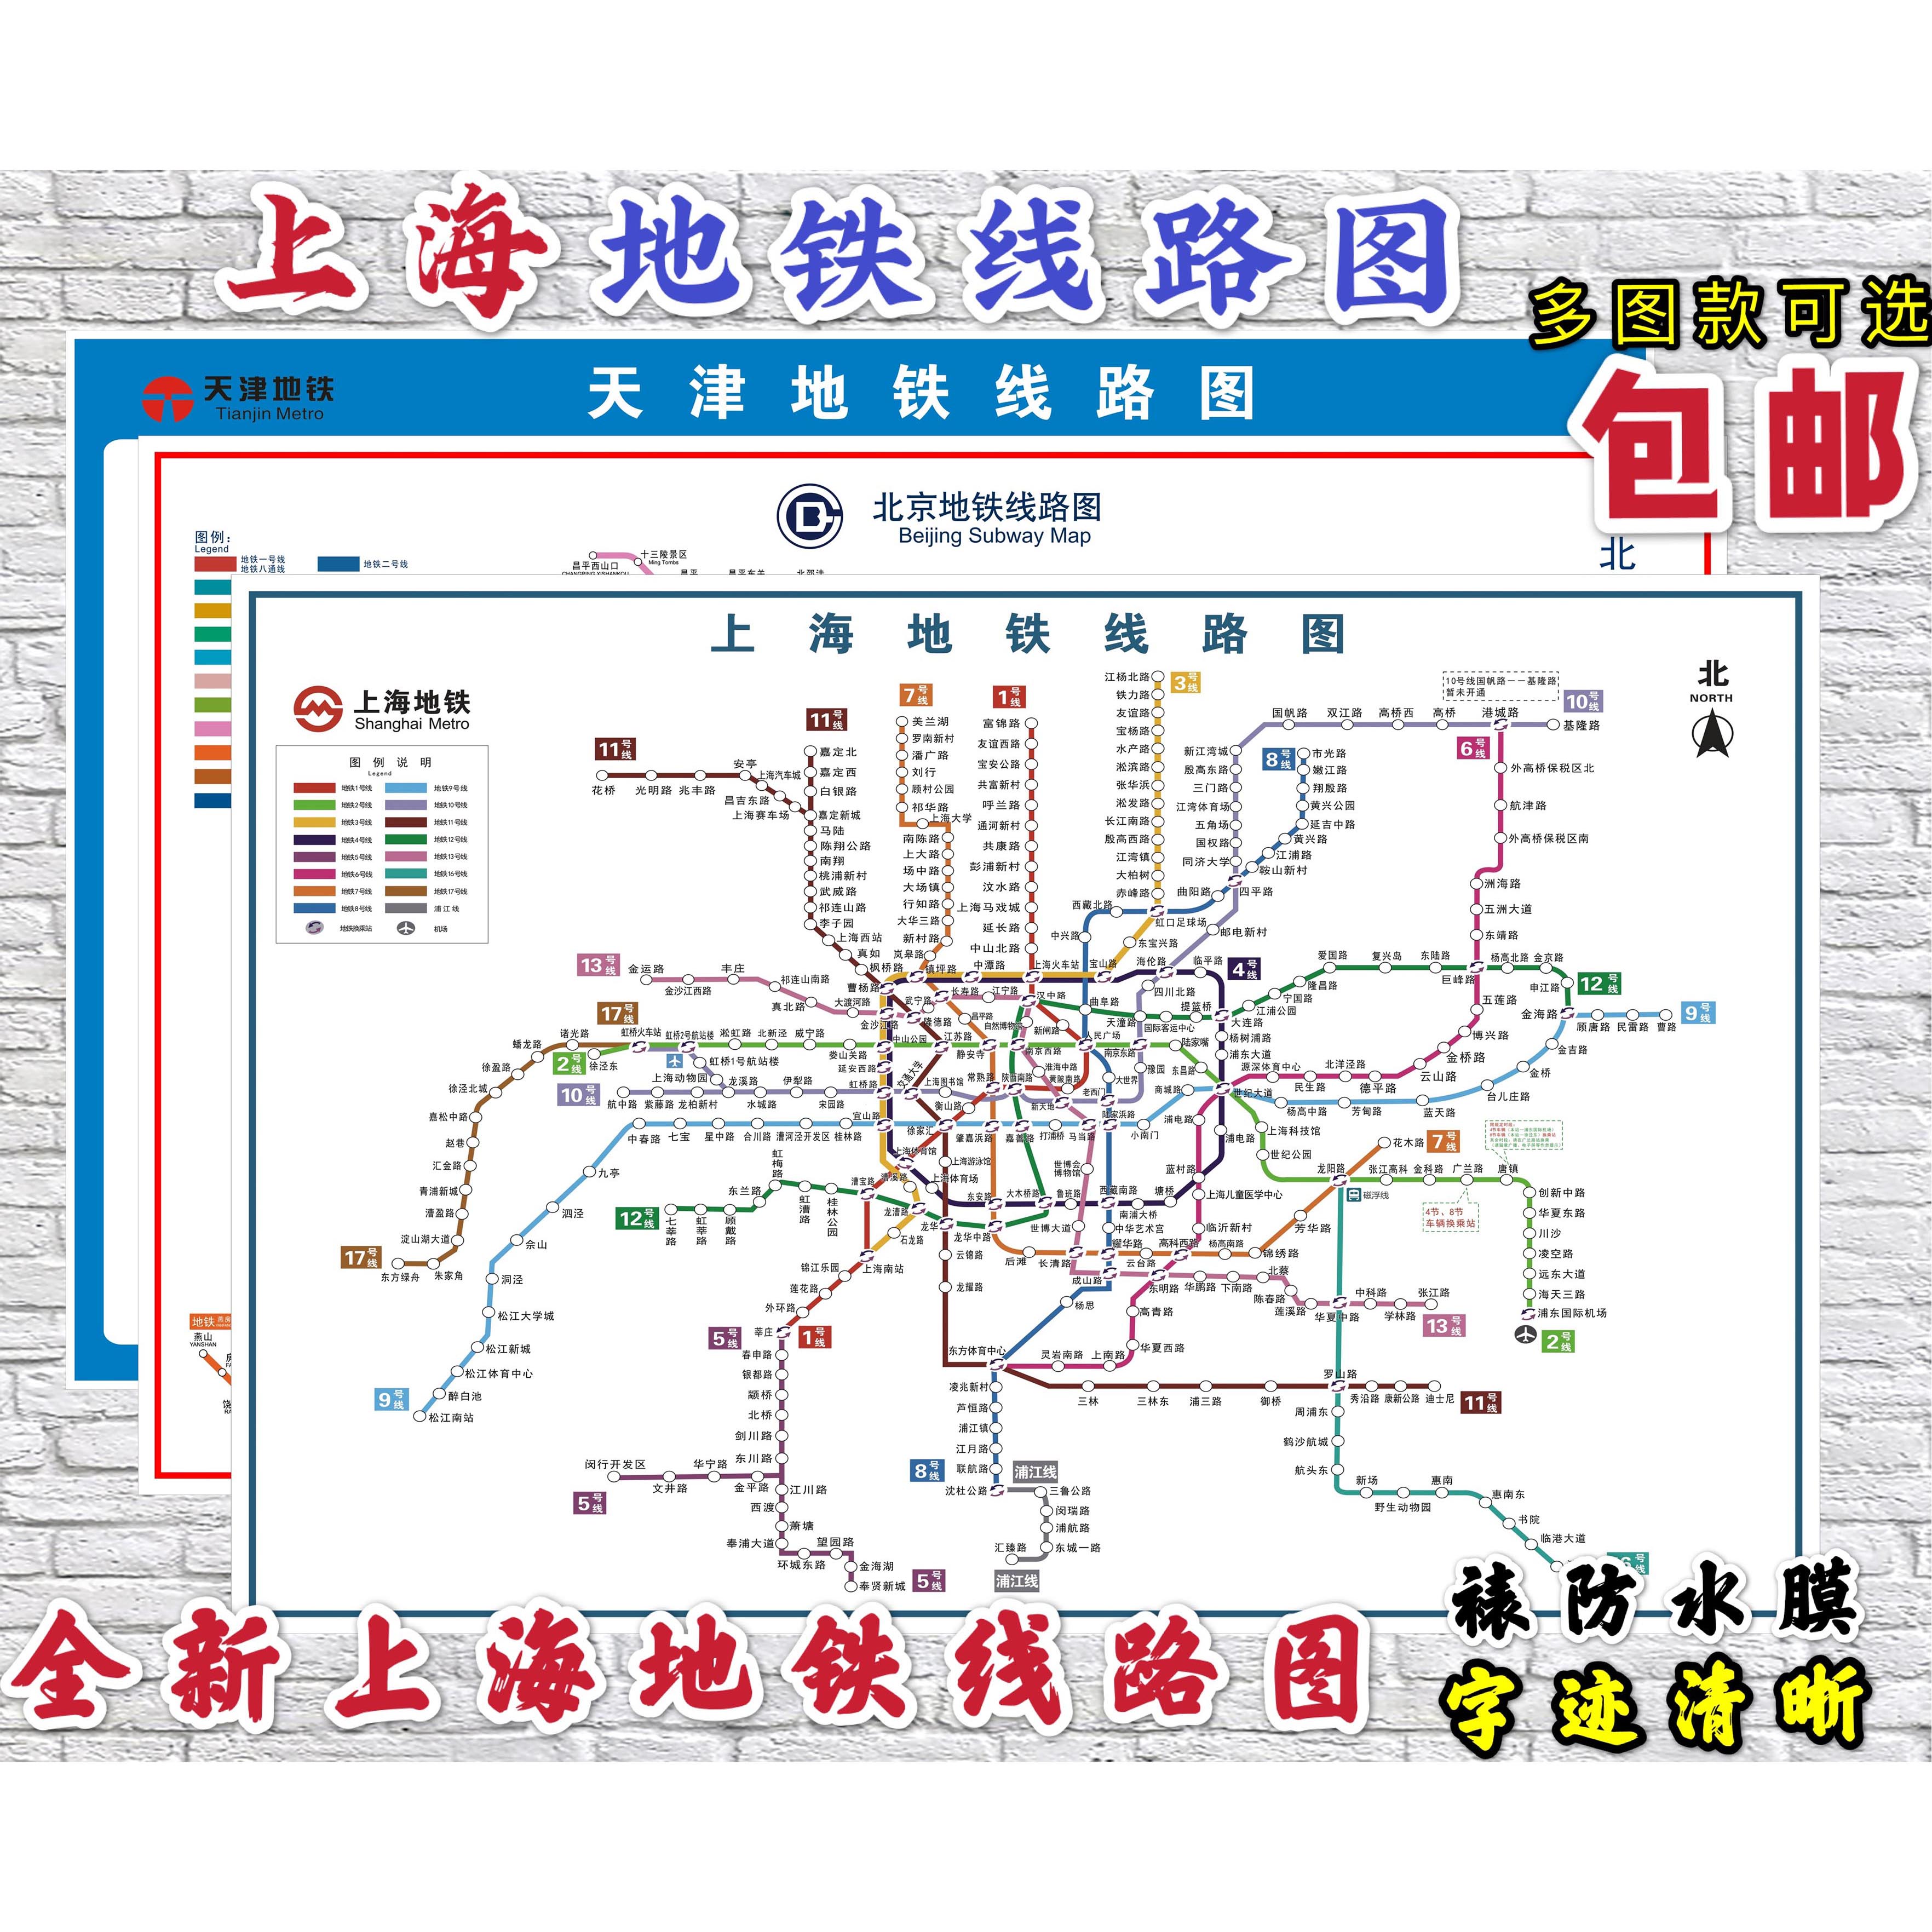 上海地铁线路图 规划